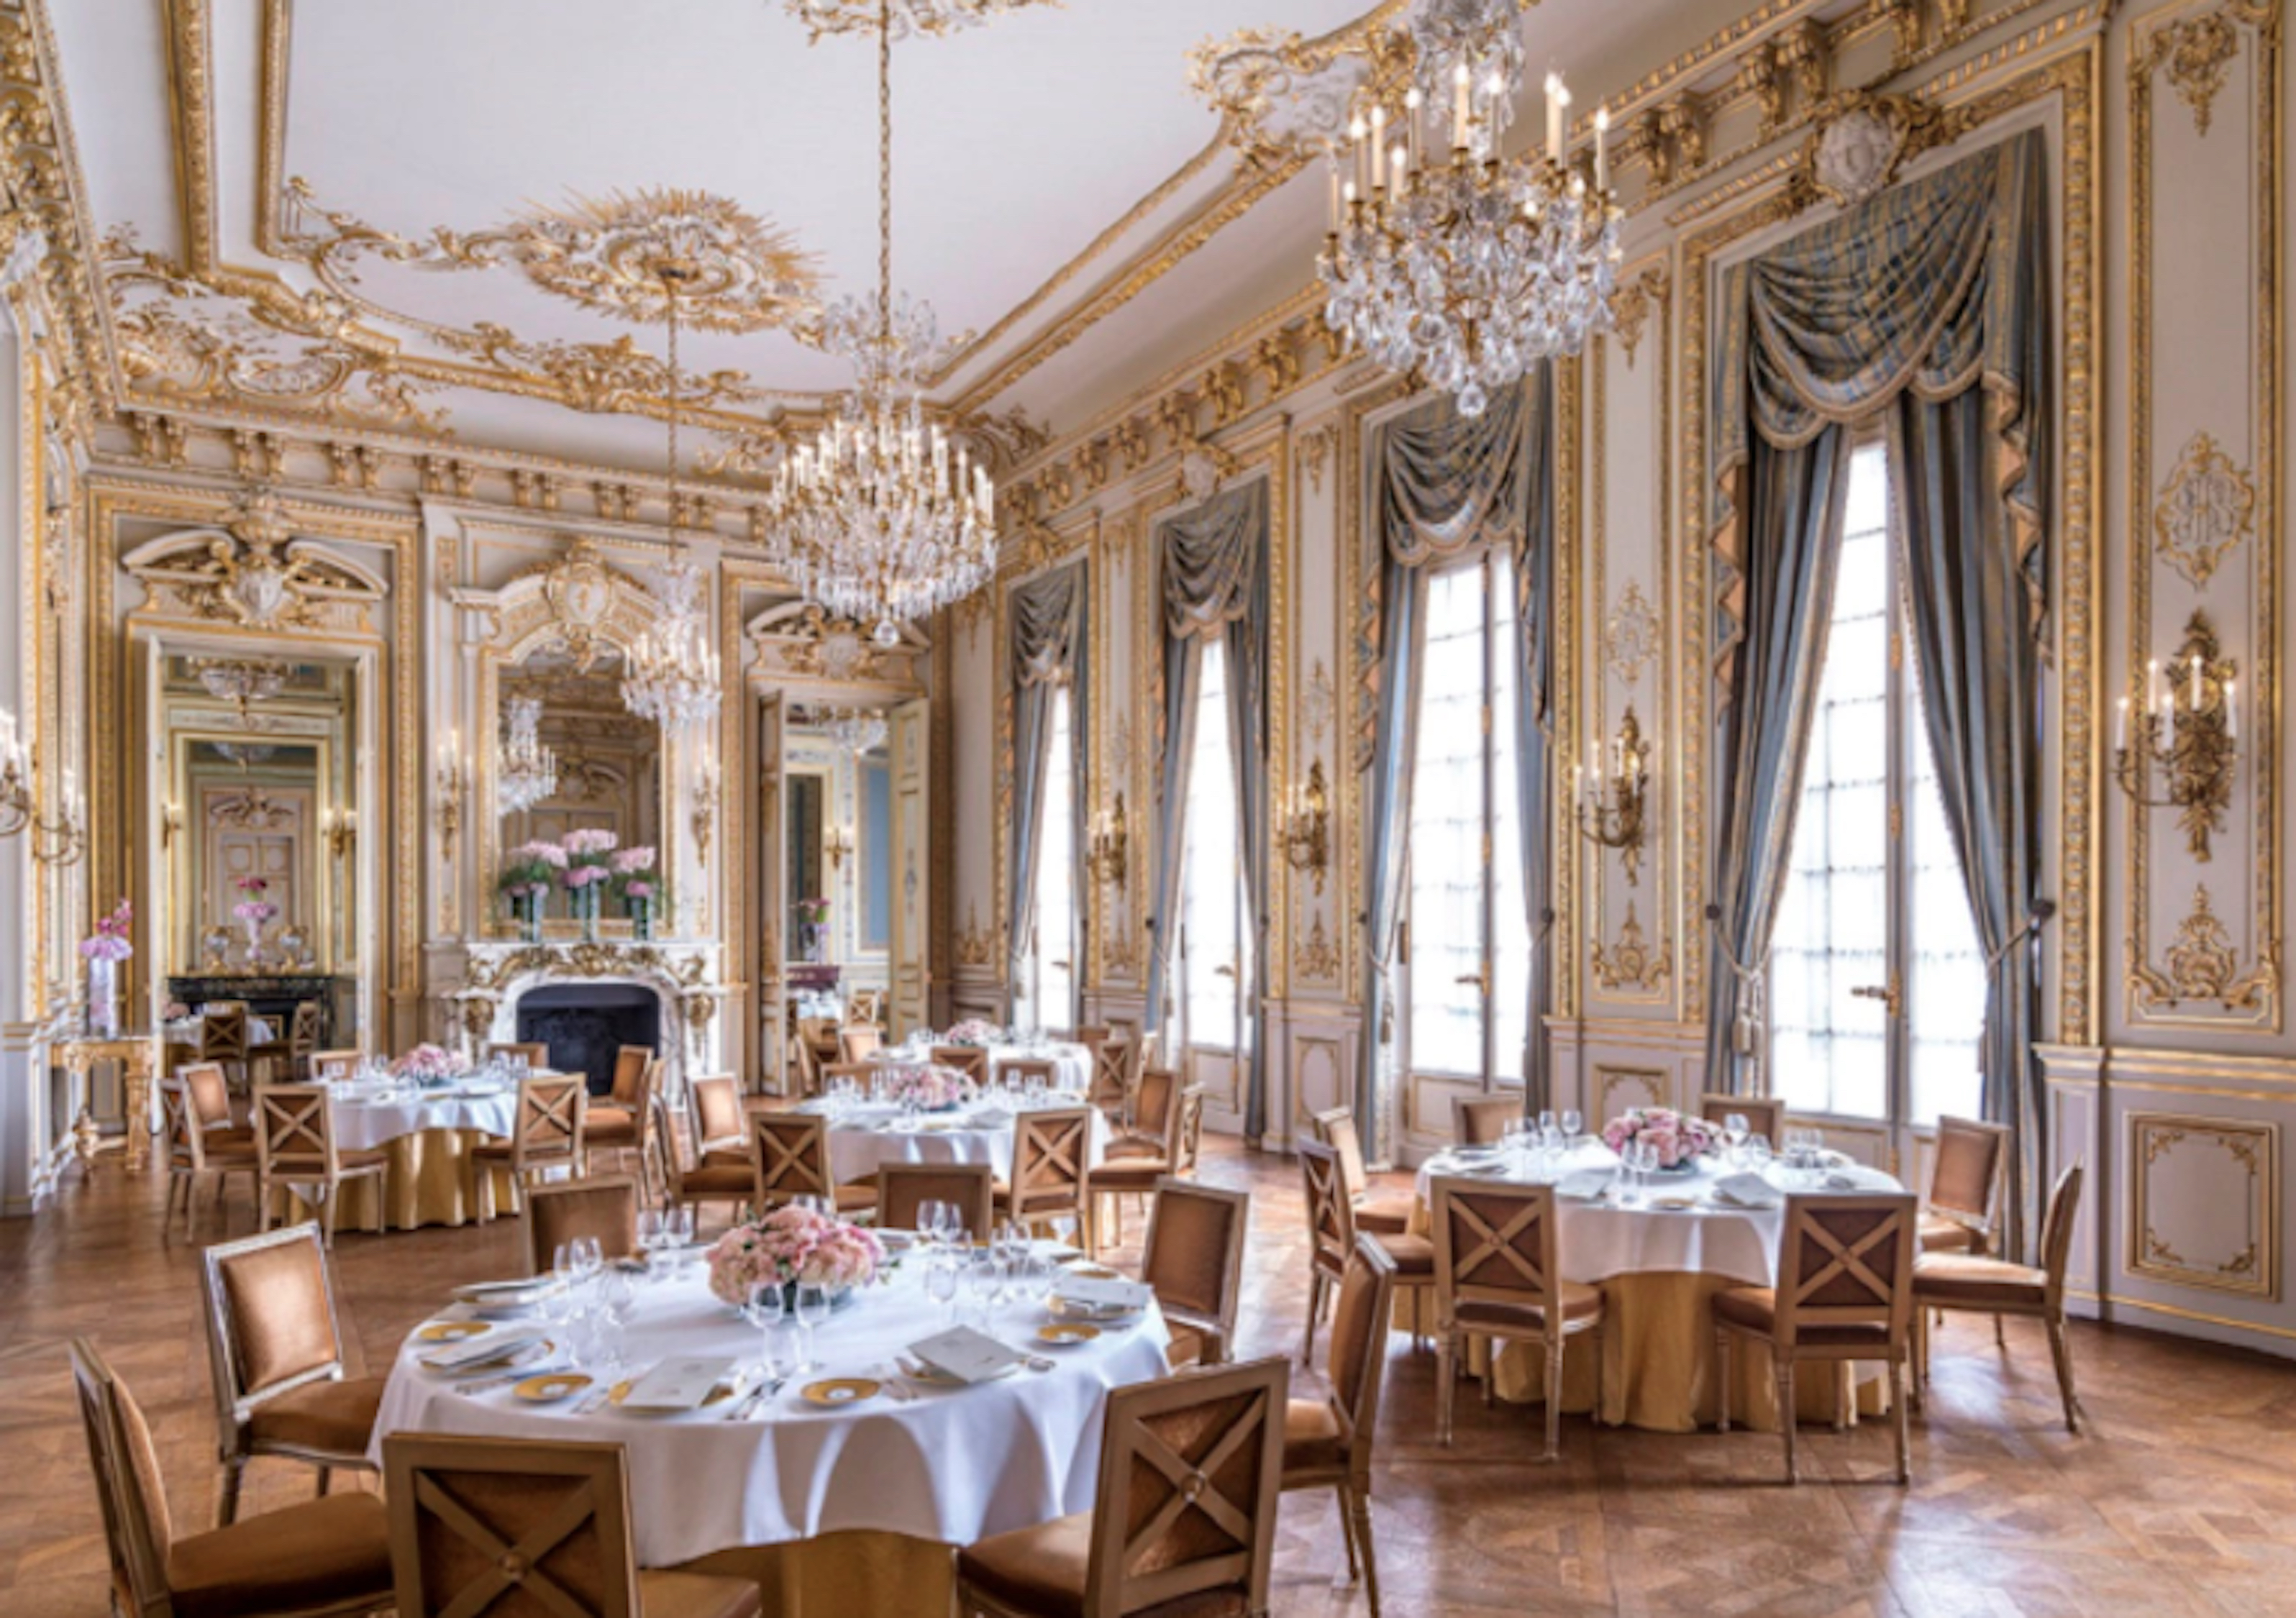 El Palacio está ubicado en el distrito residencial 16, un paso desde la Place du Trocadero en lo alto de la colina Chaillot, el hotel se encuentra al otro lado del Sena, frente a la Torre Eiffel (foto: gentileza hotel Shangri-La París)
